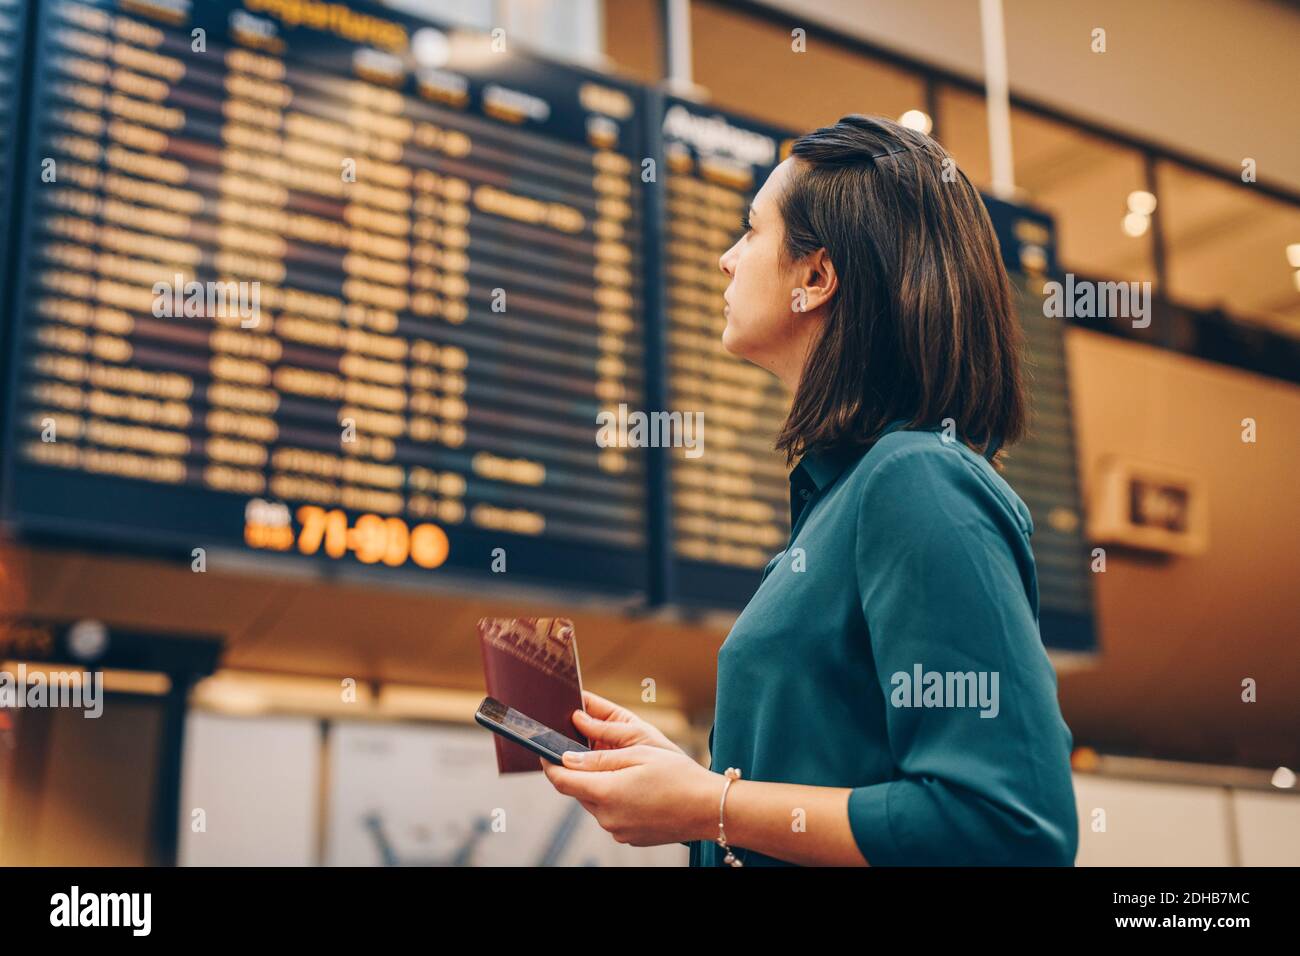 Vue latérale d'une femme d'affaires regardant le panneau de départ à l'arrivée aéroport Banque D'Images